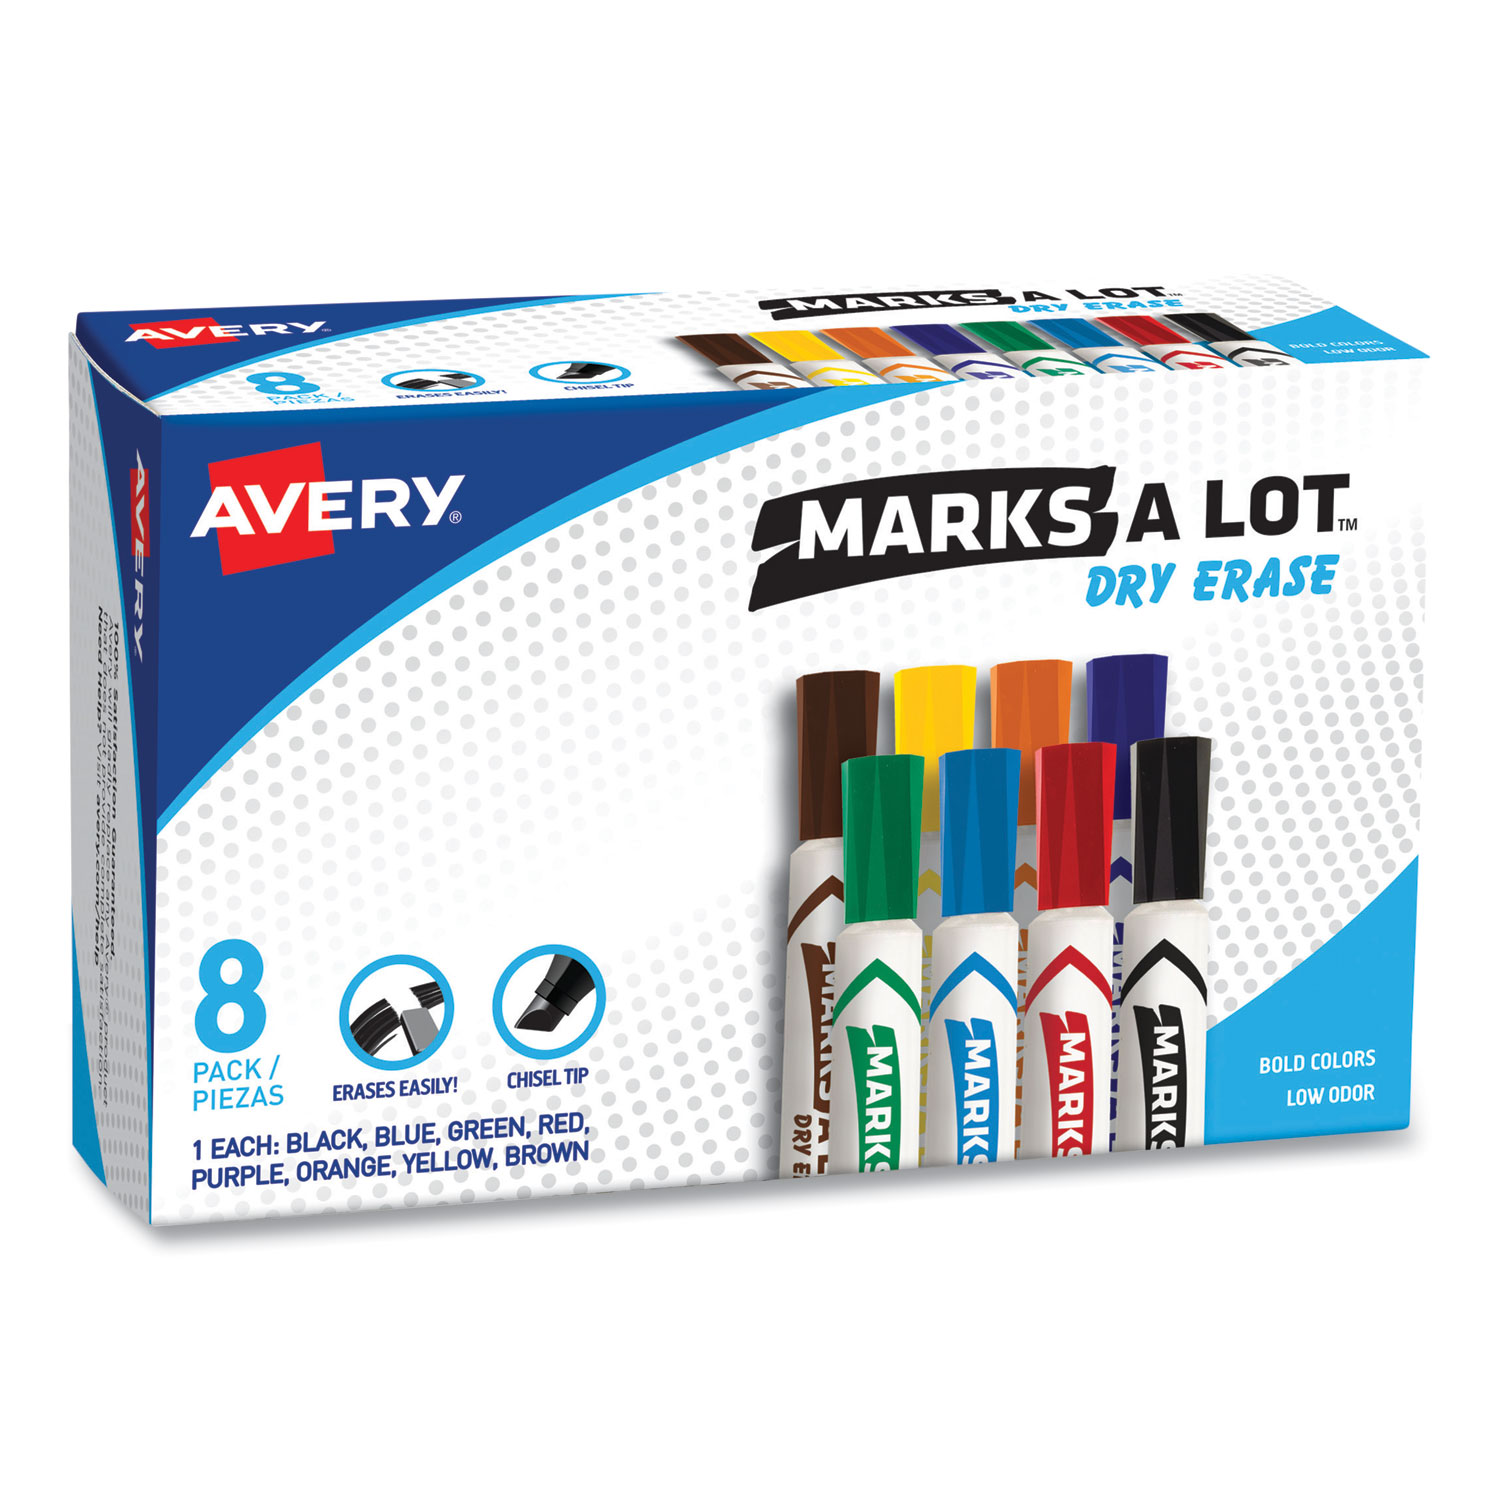 Marks-A-Lot Permanent Marker, Large Desk-Style, Bullet Tip, 1